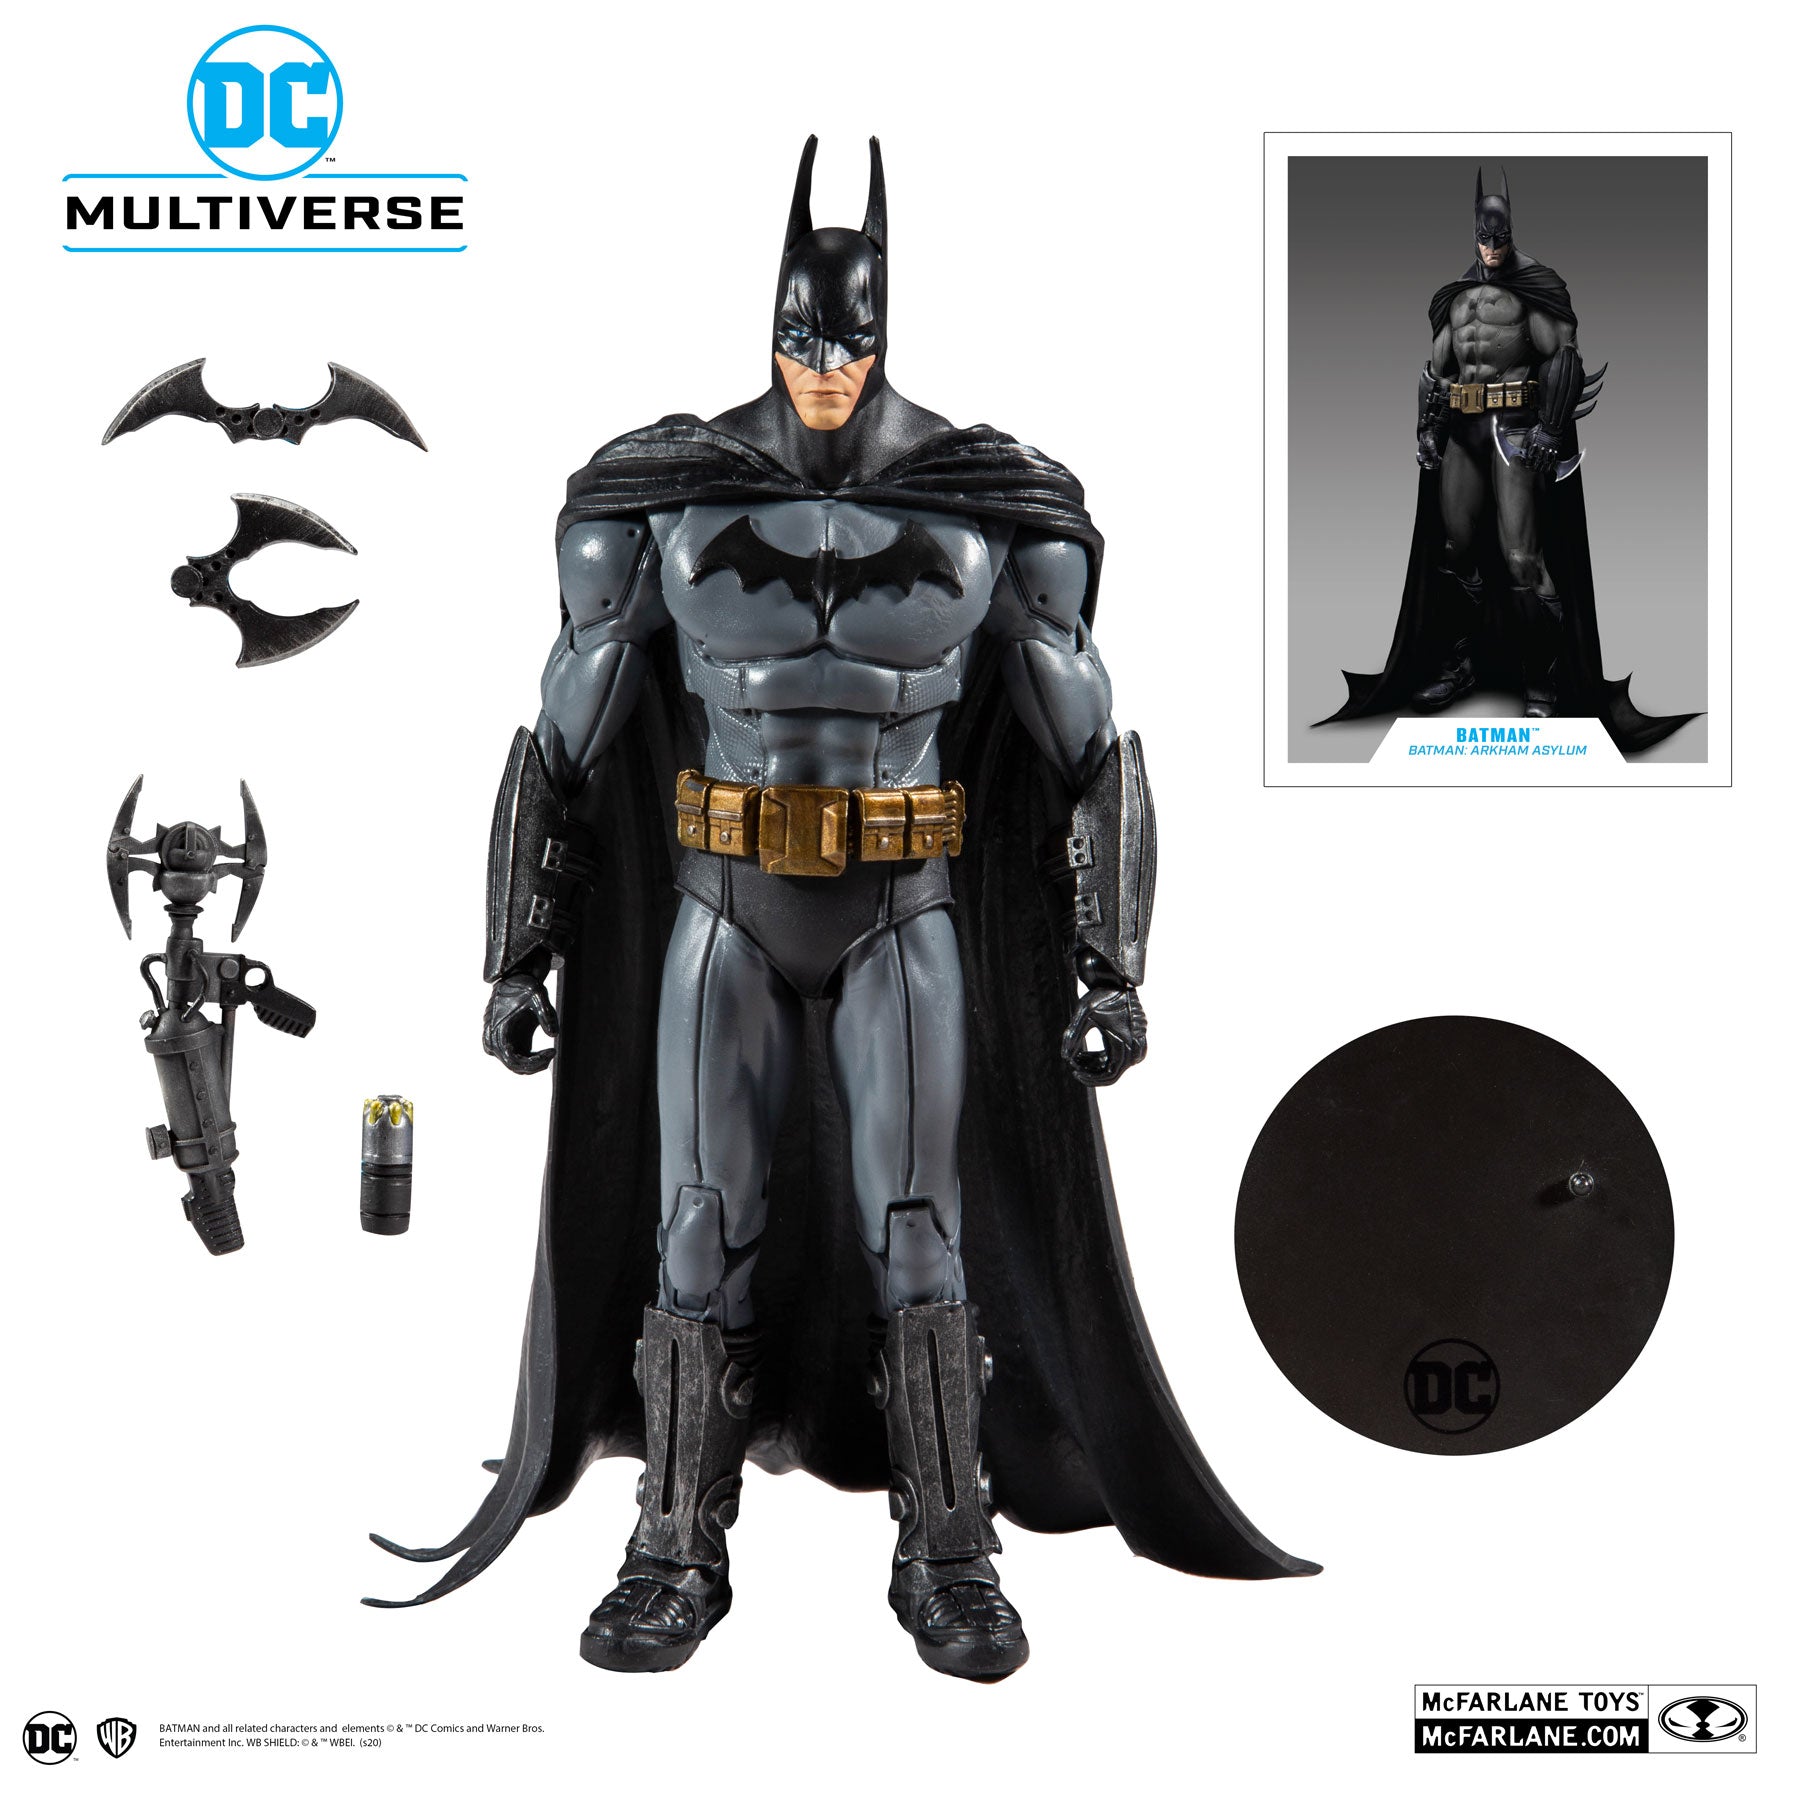 DC Multiverse Batman - Batman Arkham Asylum - McFarlane Toys-2